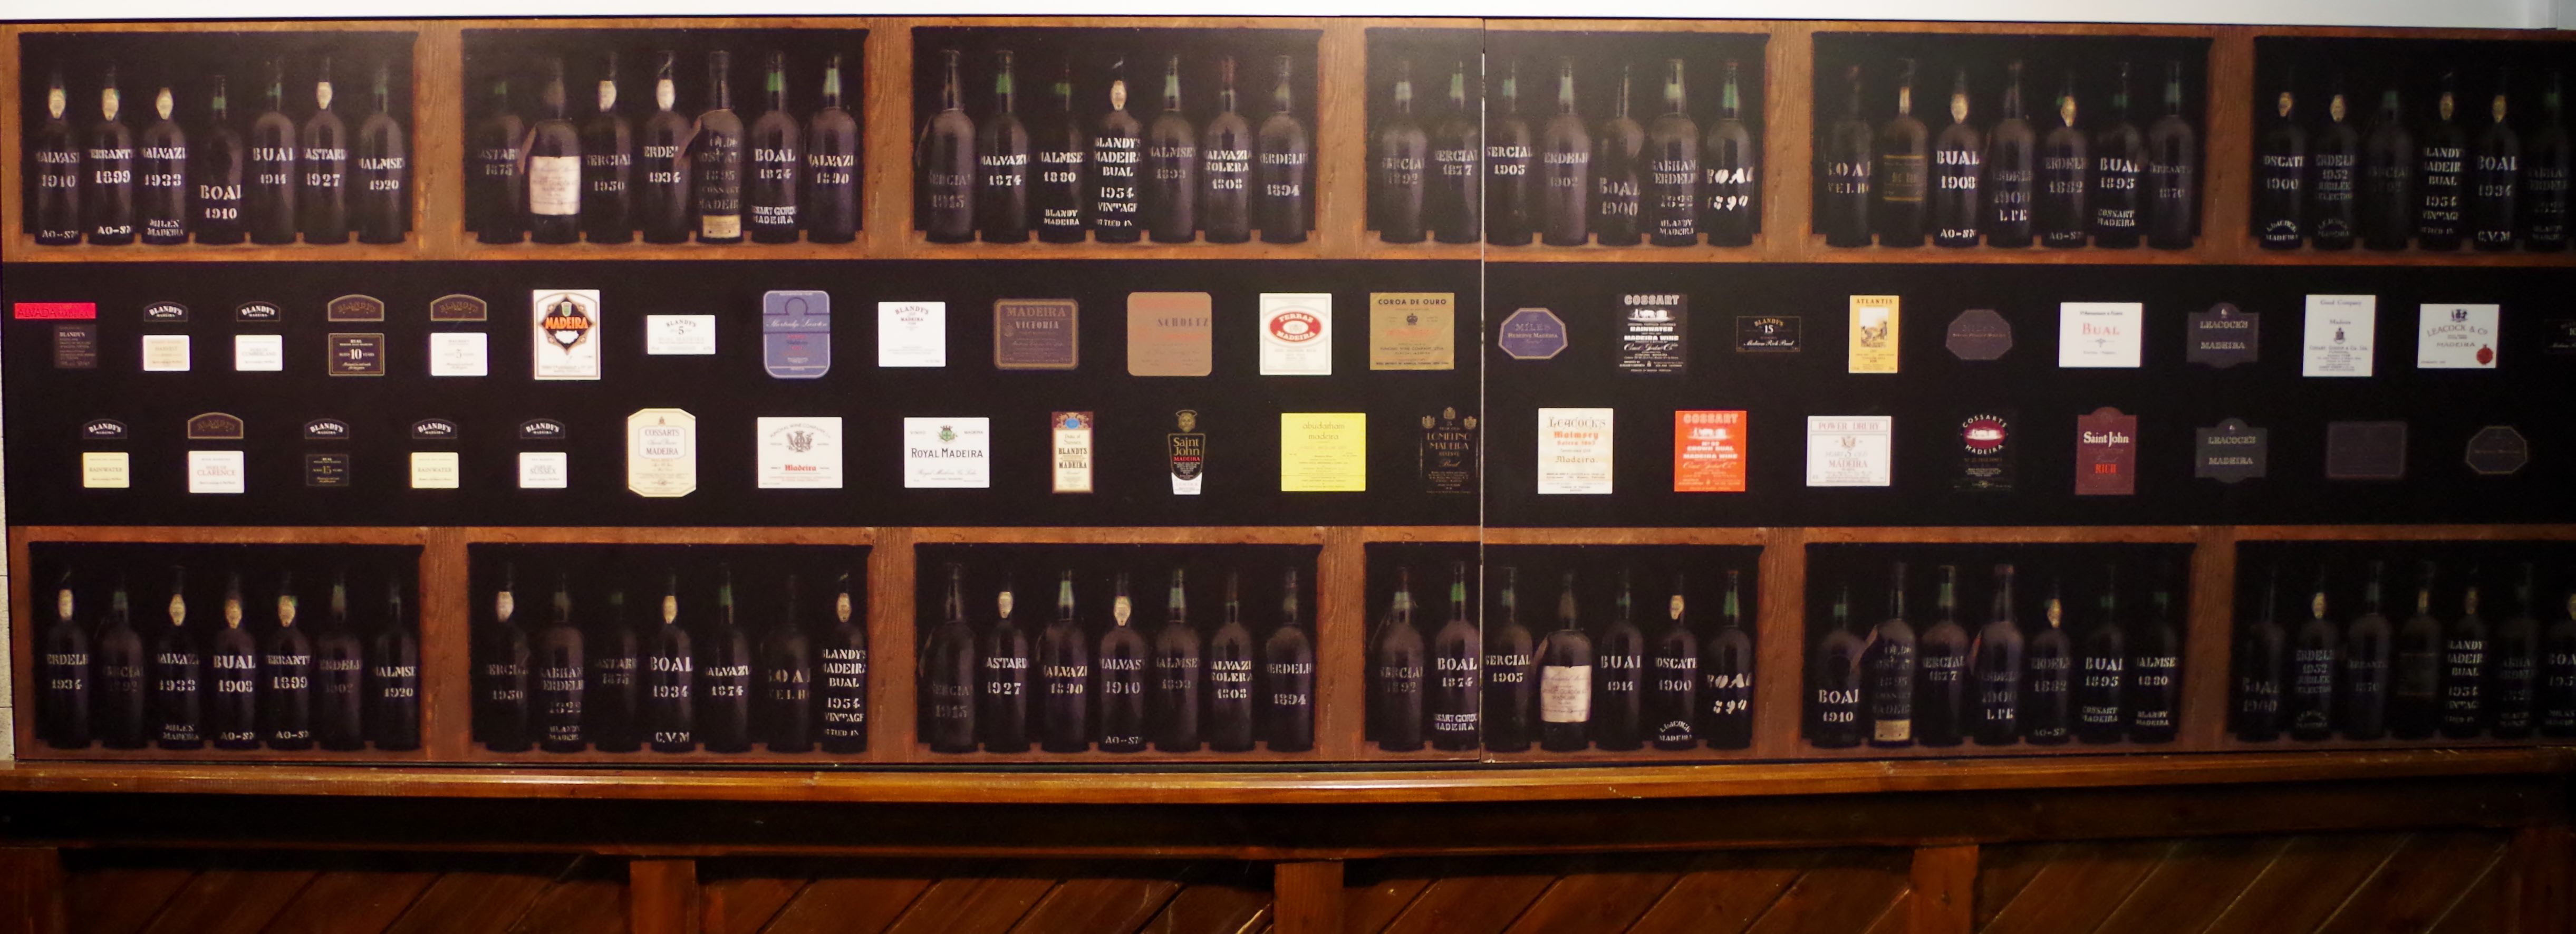 Blandys range of Madeira wines